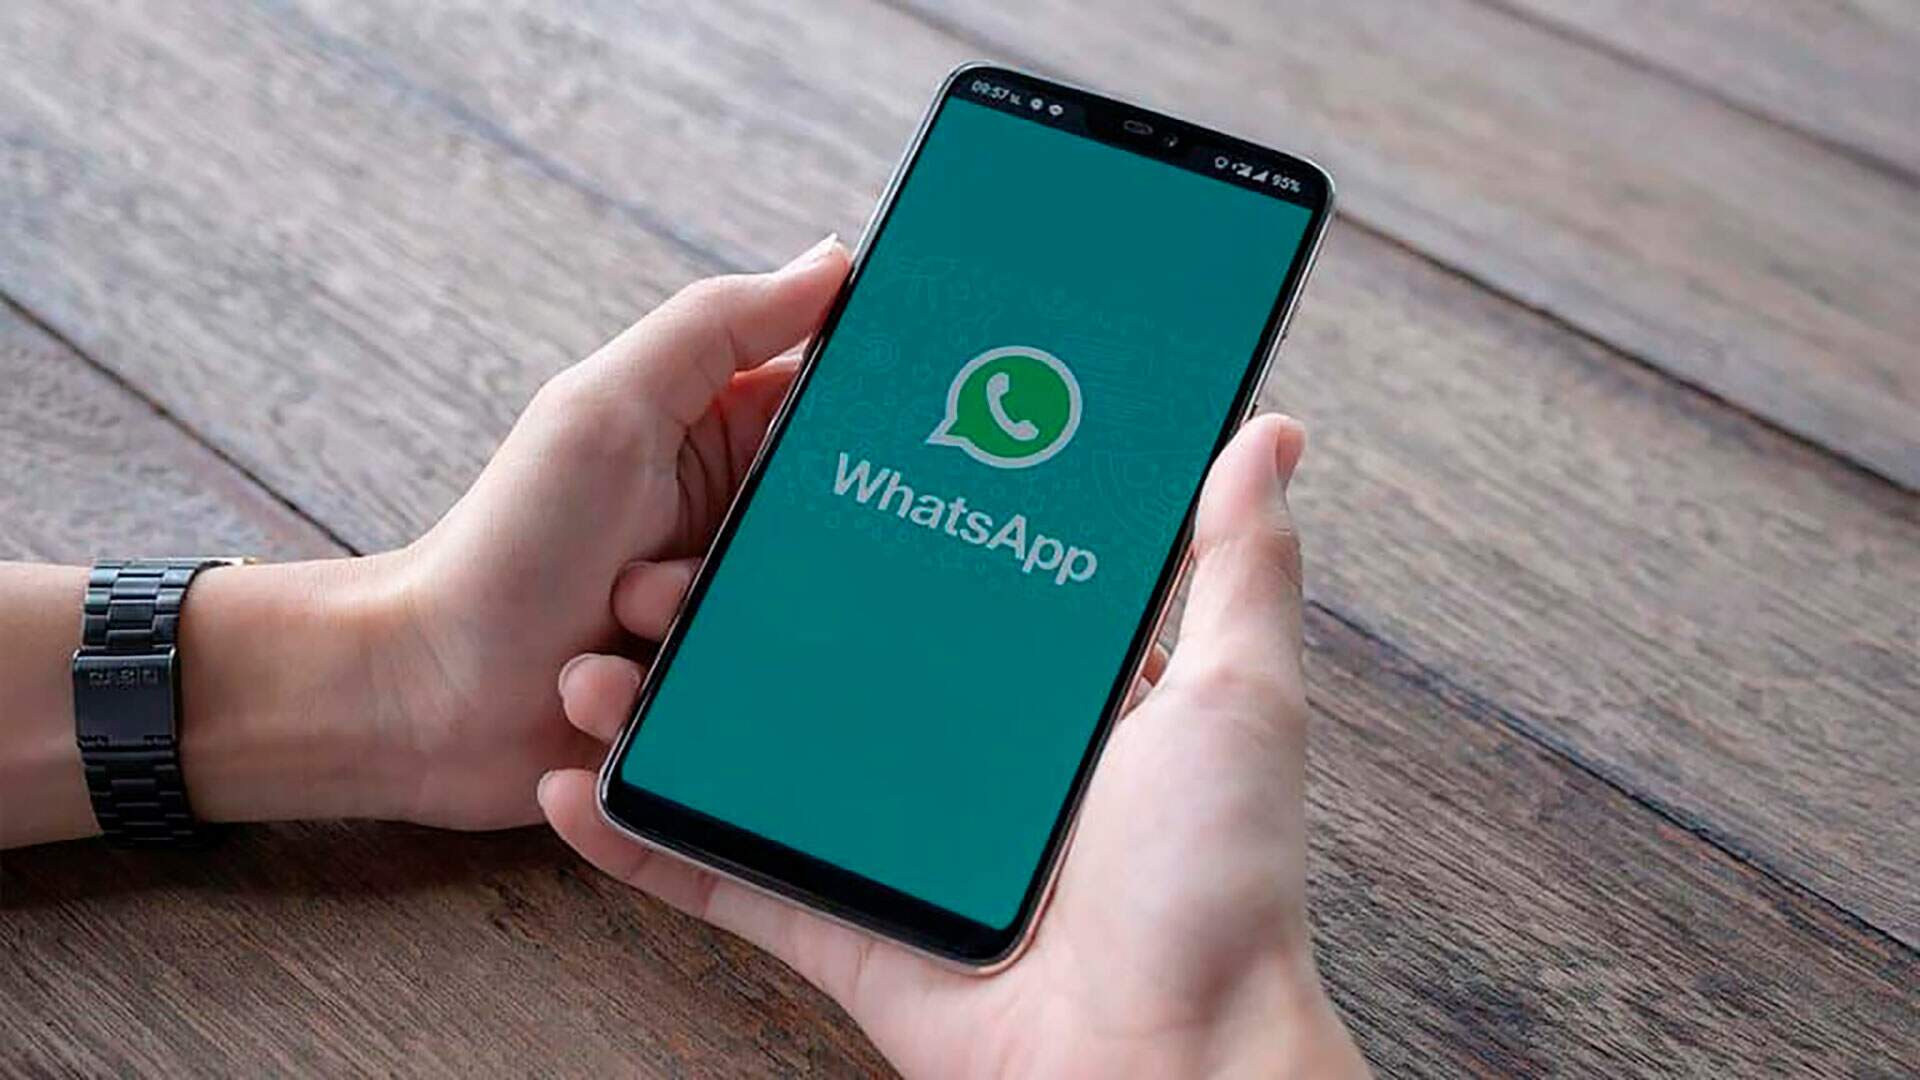 WhatsApp sai do ar no Brasil e gera polêmica: “Acabou?”